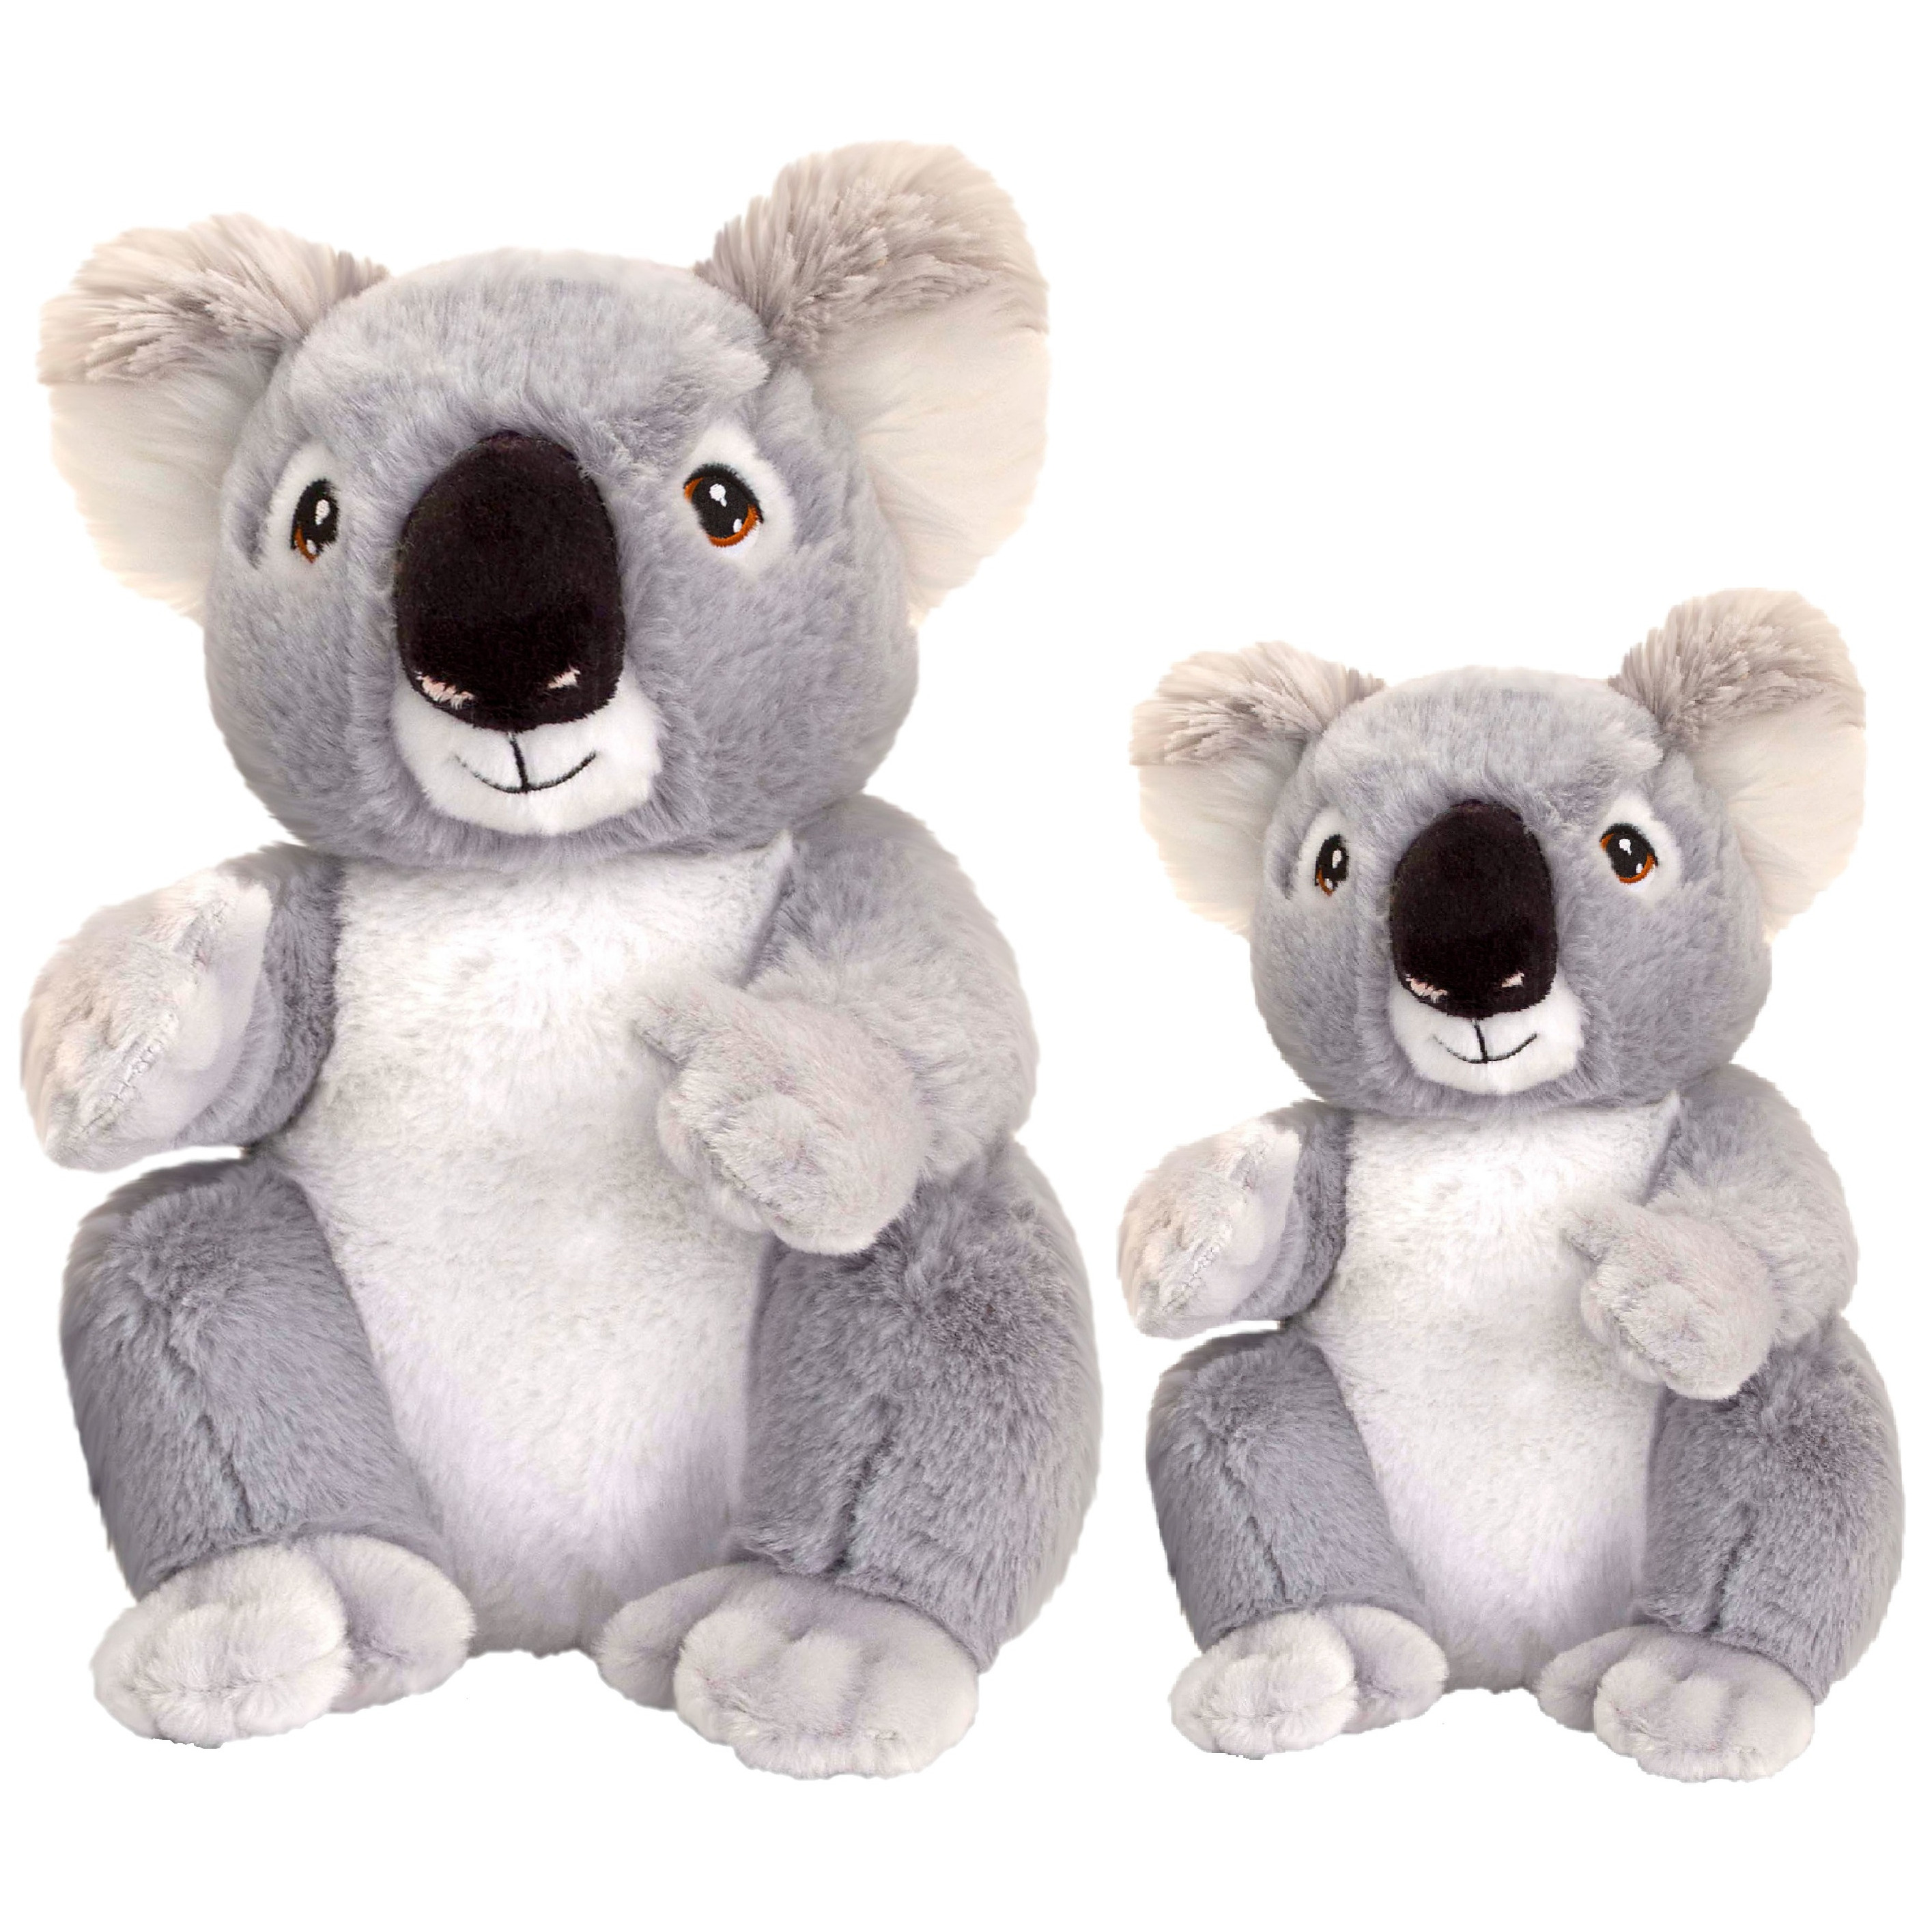  Pluche knuffel dieren set 2x koala beertjes 18 en 26 cm -